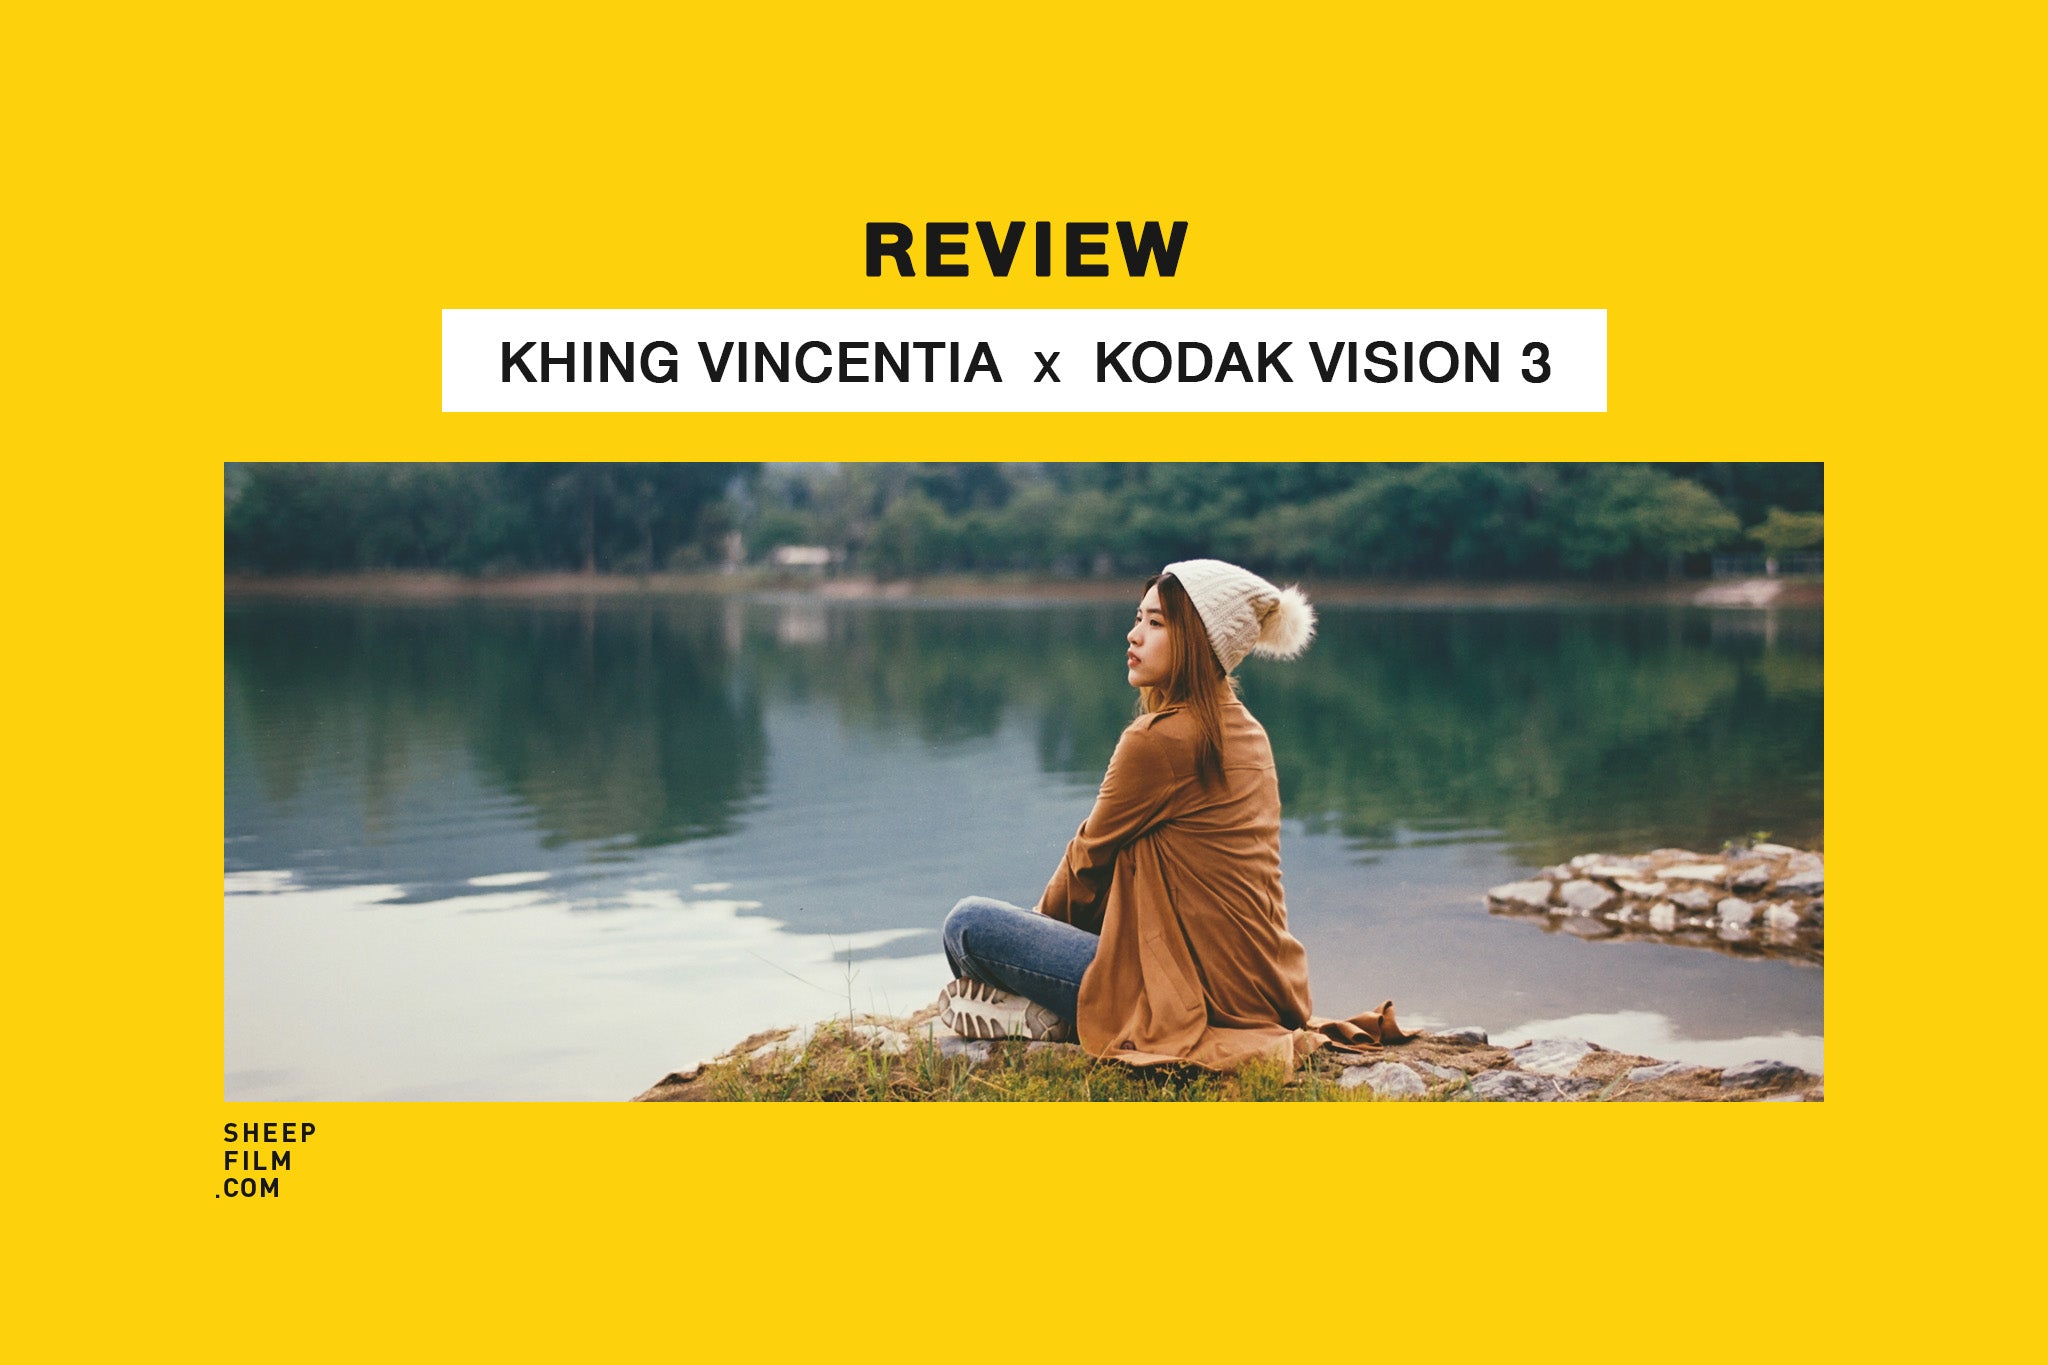 Kodak Vision 3